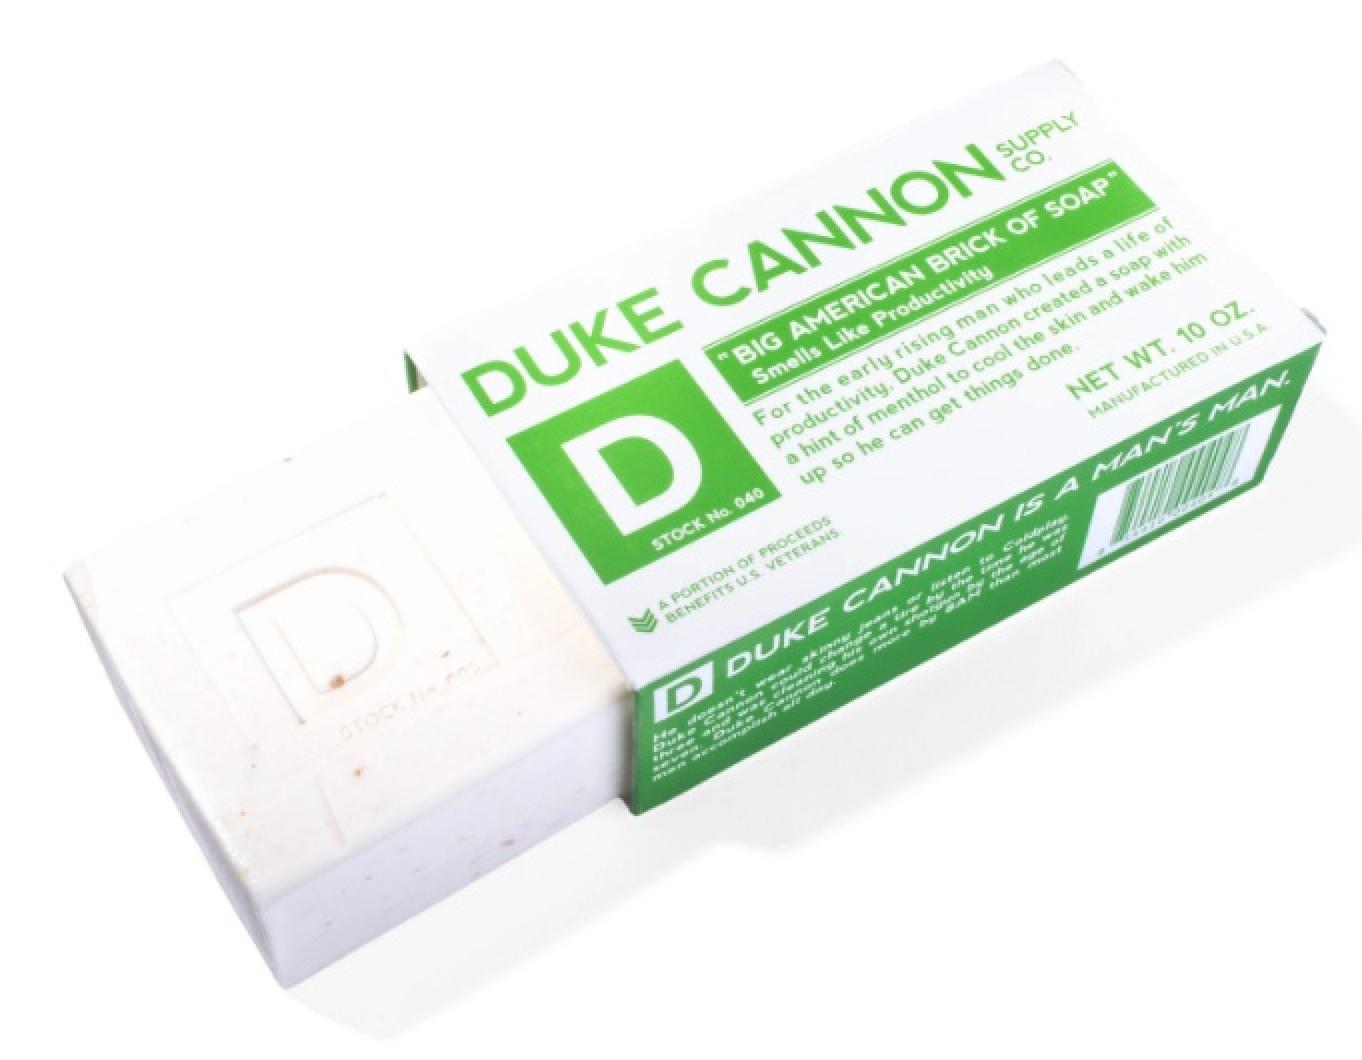 Duke Cannon Big American Brick of Soap - Productivity